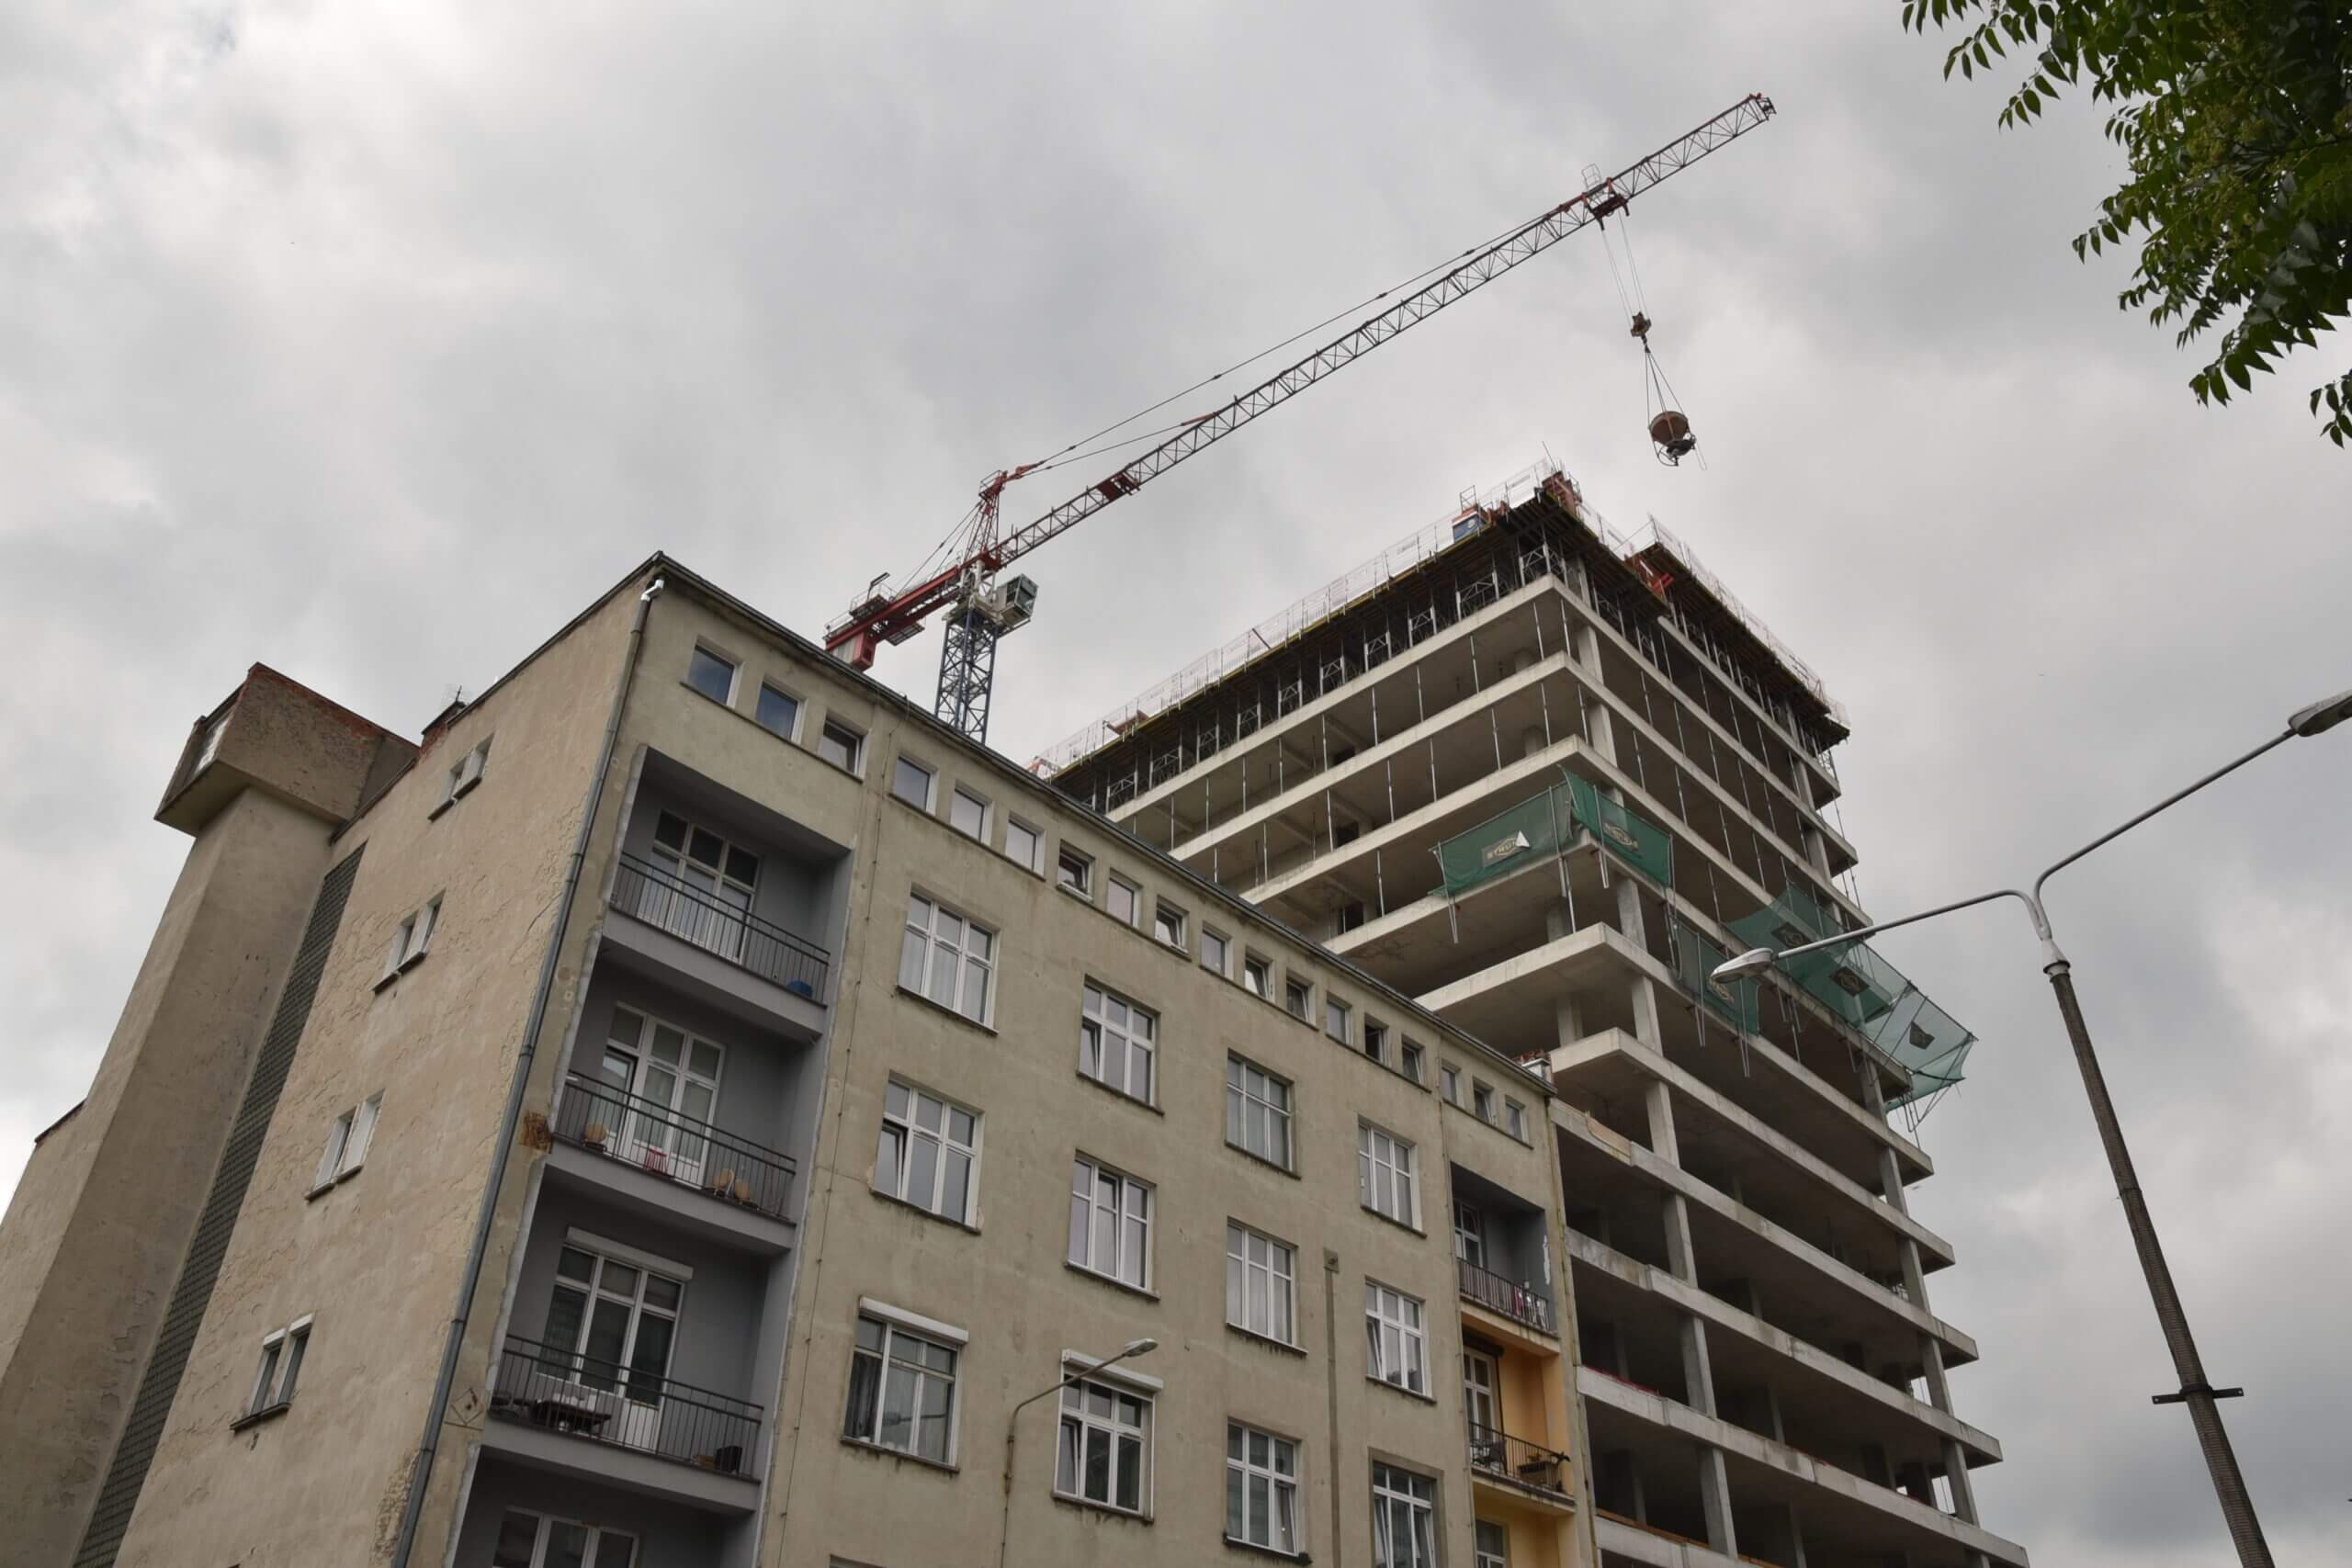 Budowa I2 Development, KPB, ul. Powstańców Śląskich, 2021